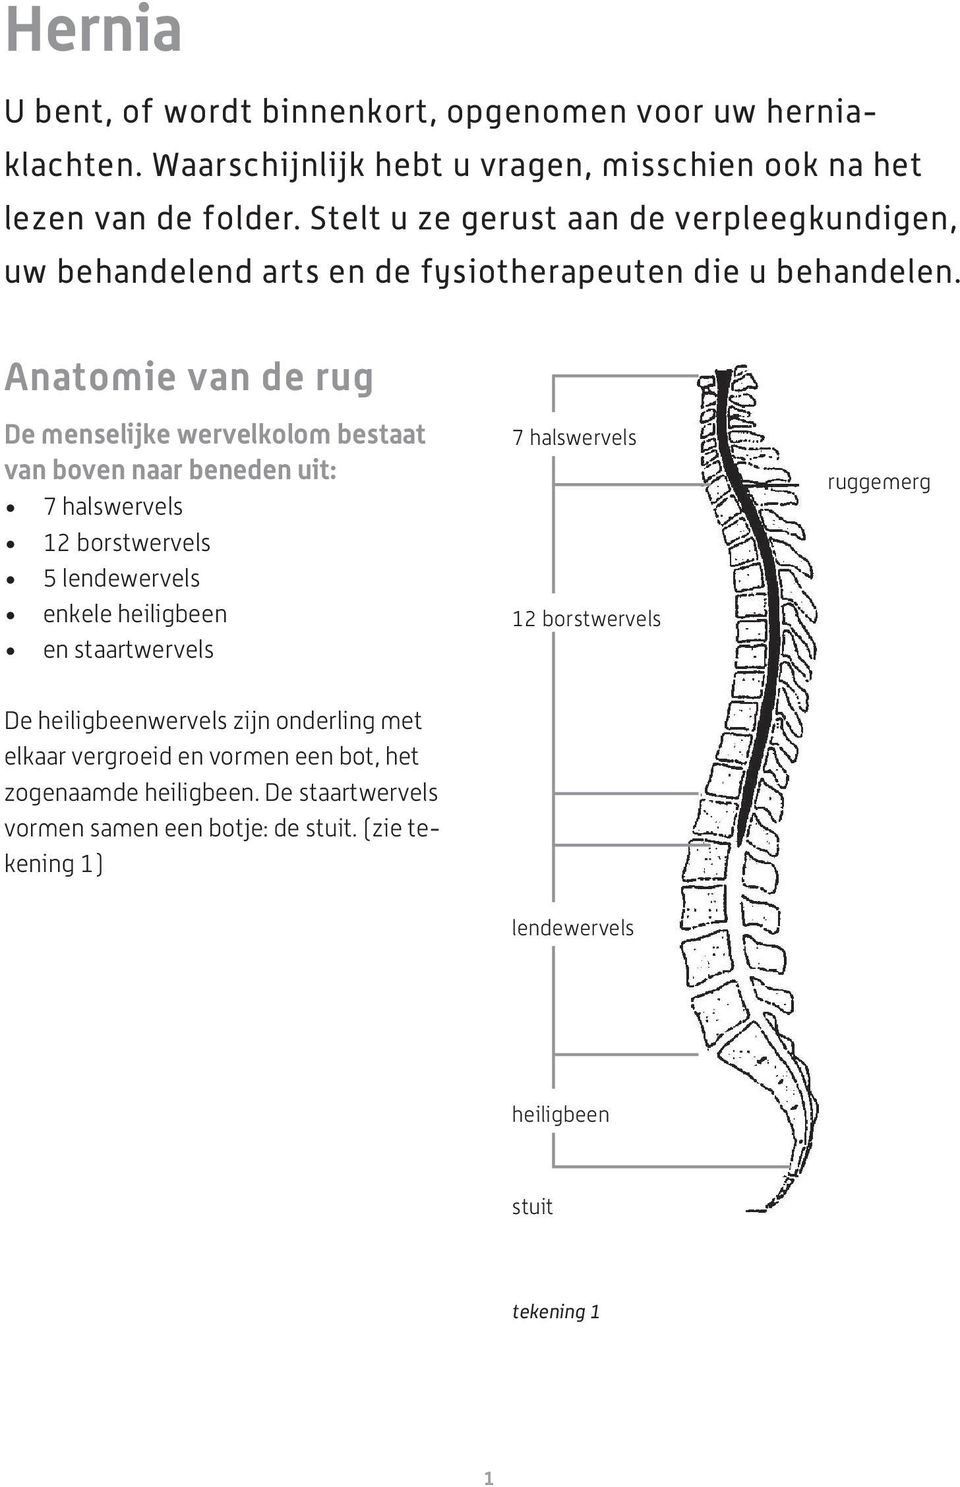 Anatomie van de rug De menselijke wervelkolom bestaat van boven naar beneden uit: 7 halswervels 12 borstwervels 5 lendewervels enkele heiligbeen en staartwervels 7